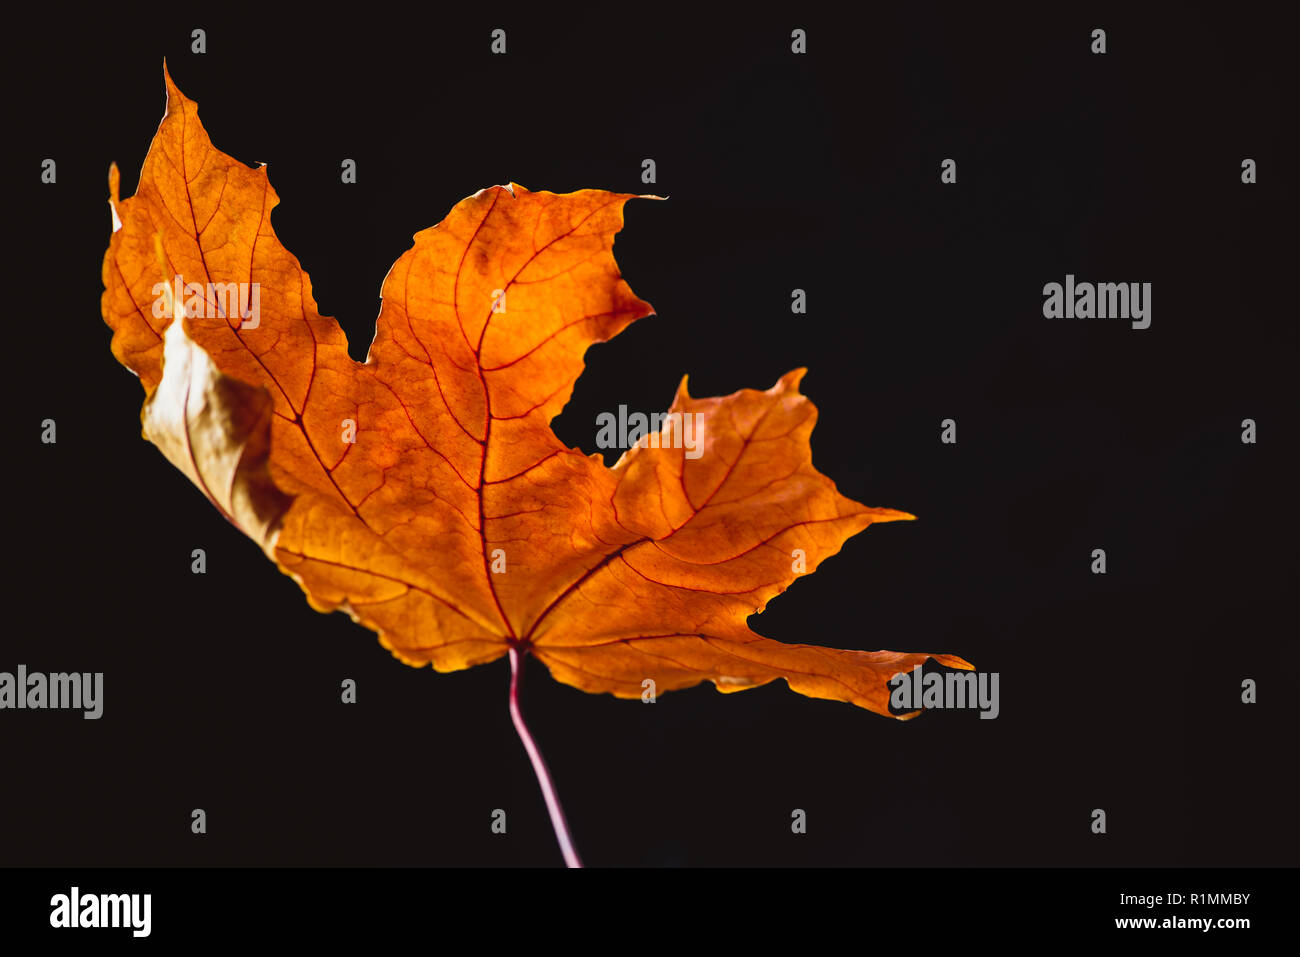 beautiful orange maple leaf isolated on black, autumn background Stock Photo